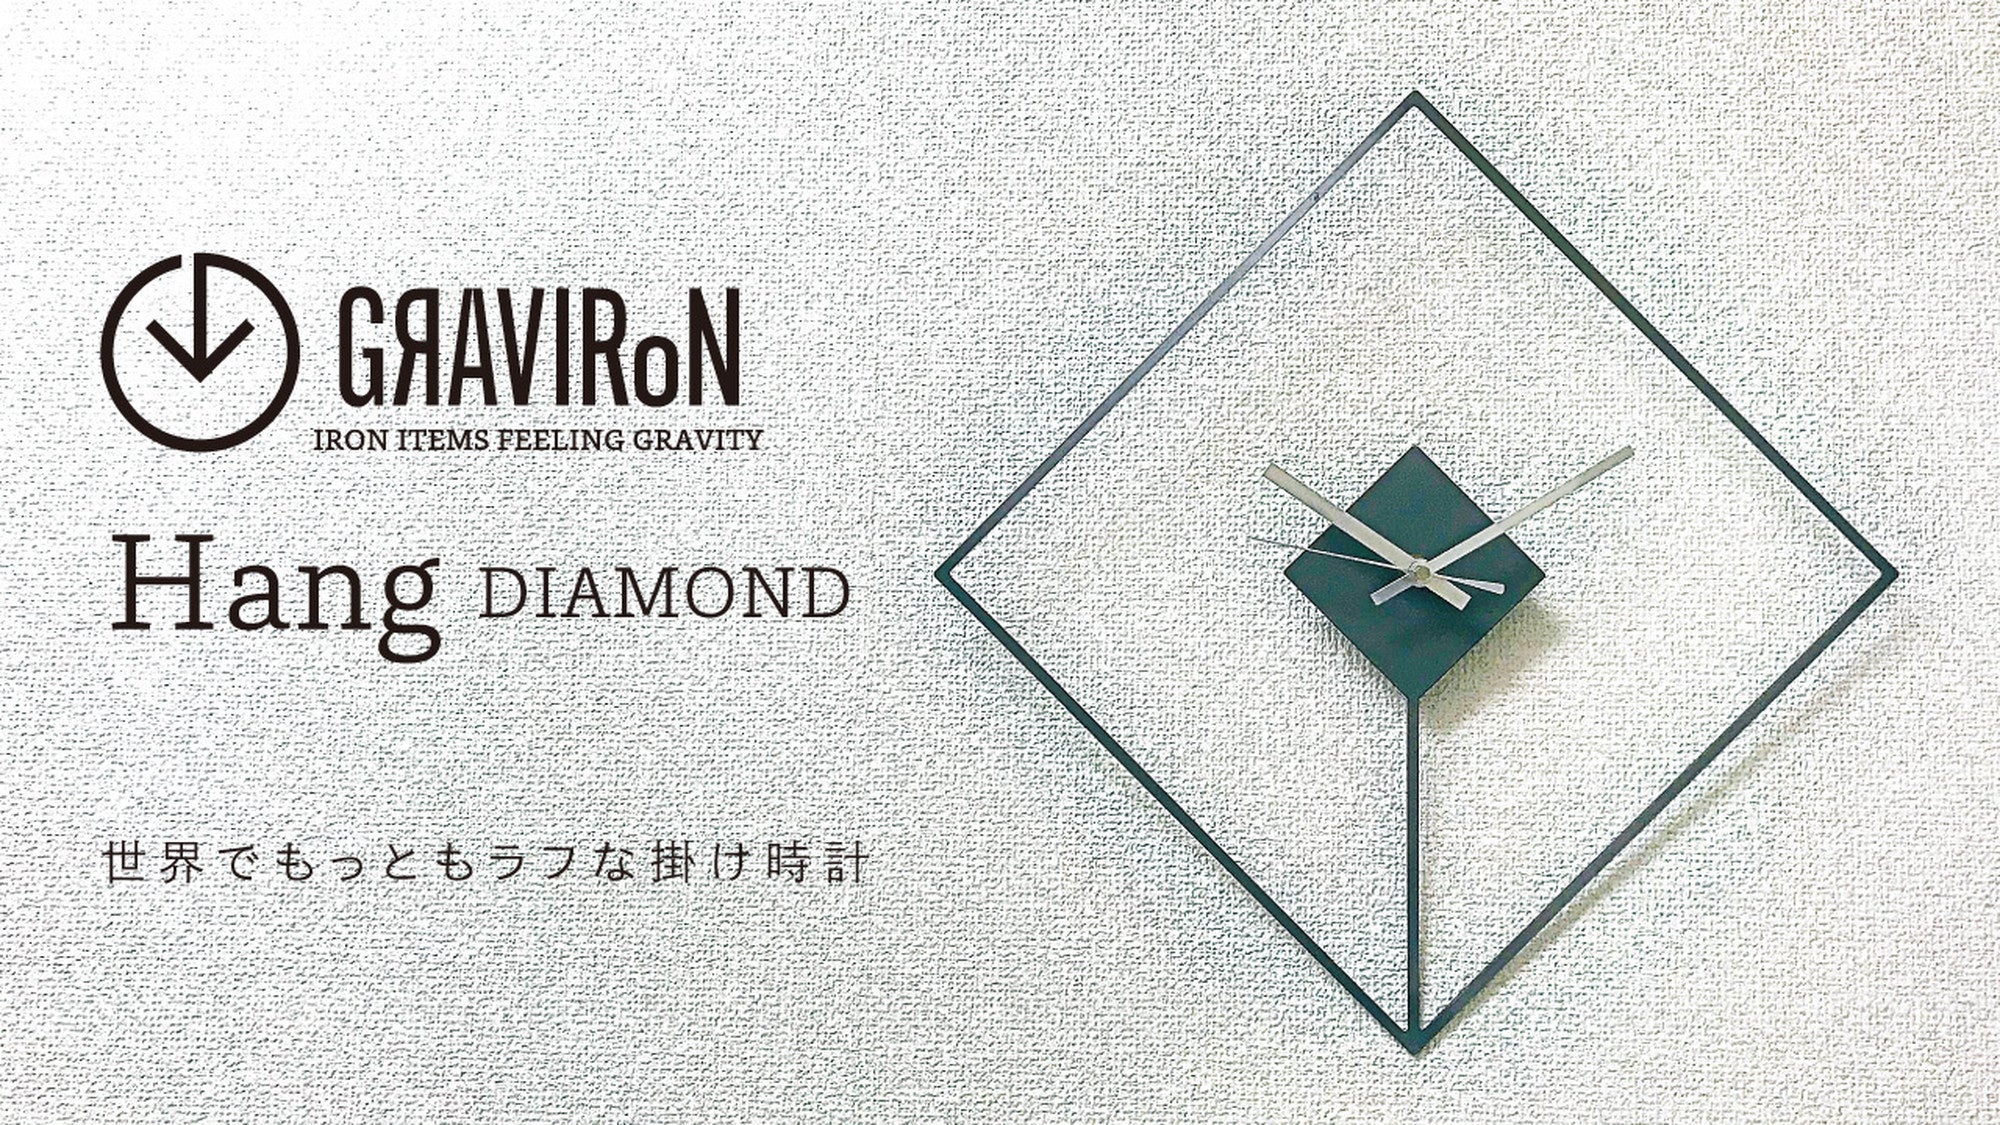 Hang DIAMOND　黒皮鉄